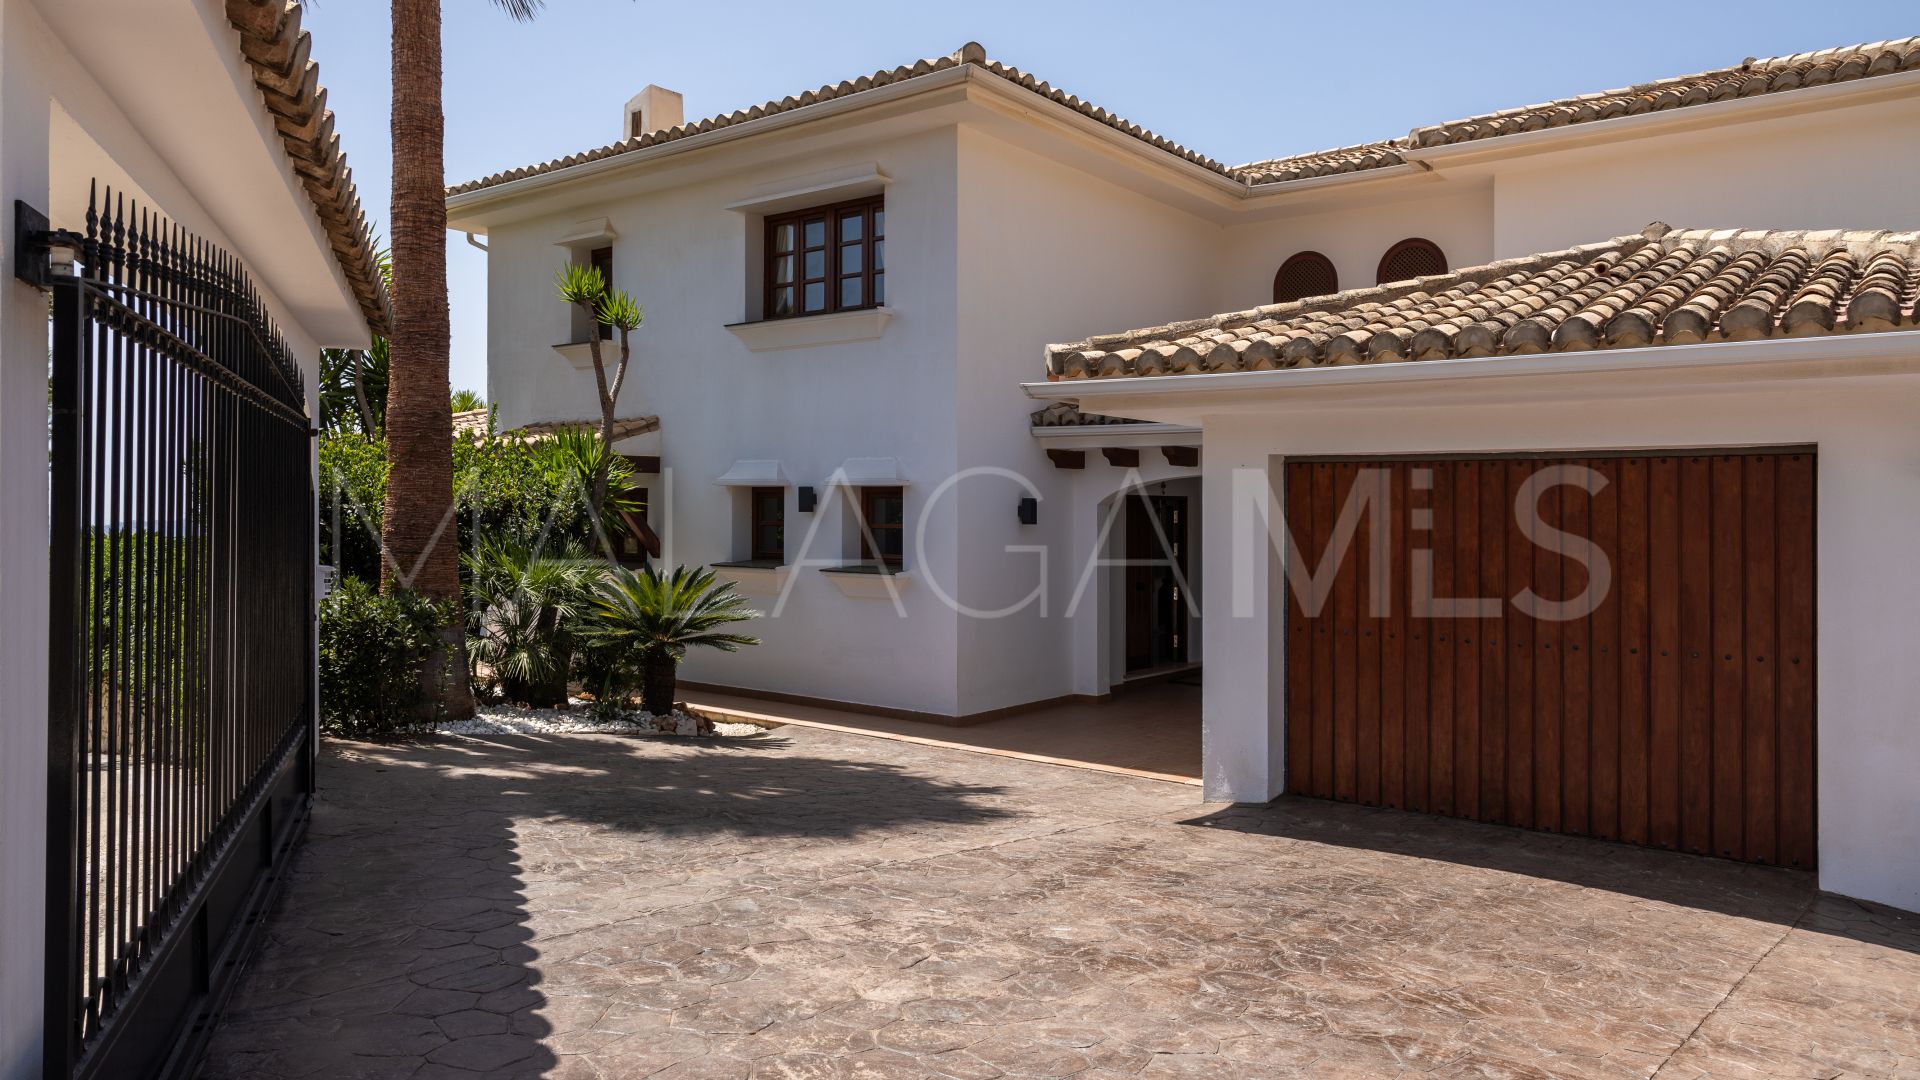 Villa with 4 bedrooms for sale in Valtocado